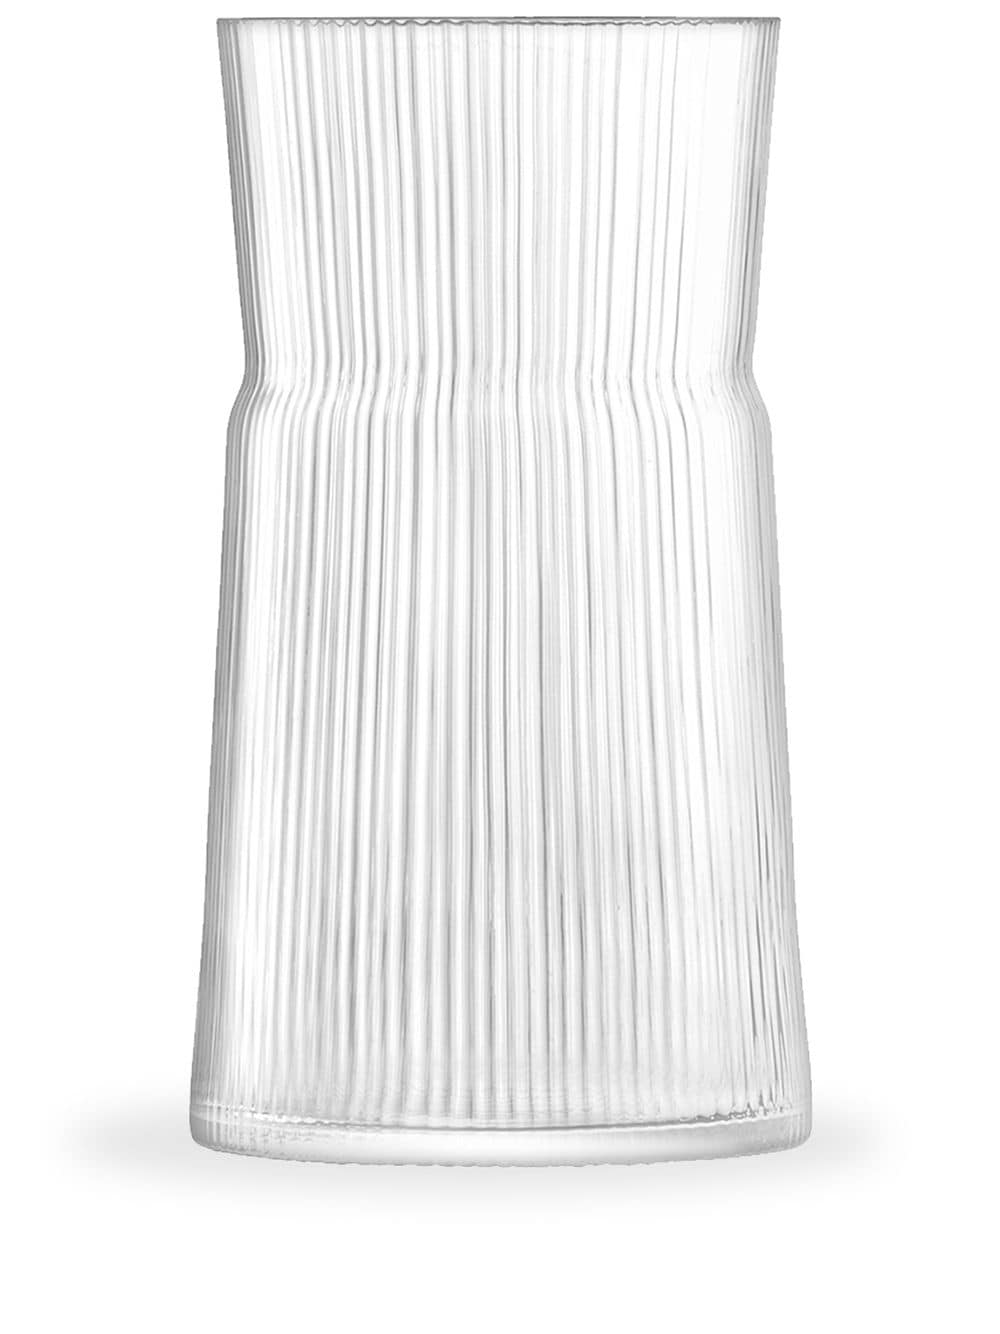 LSA International Gio Line vase (28.8cm) - Neutrals von LSA International